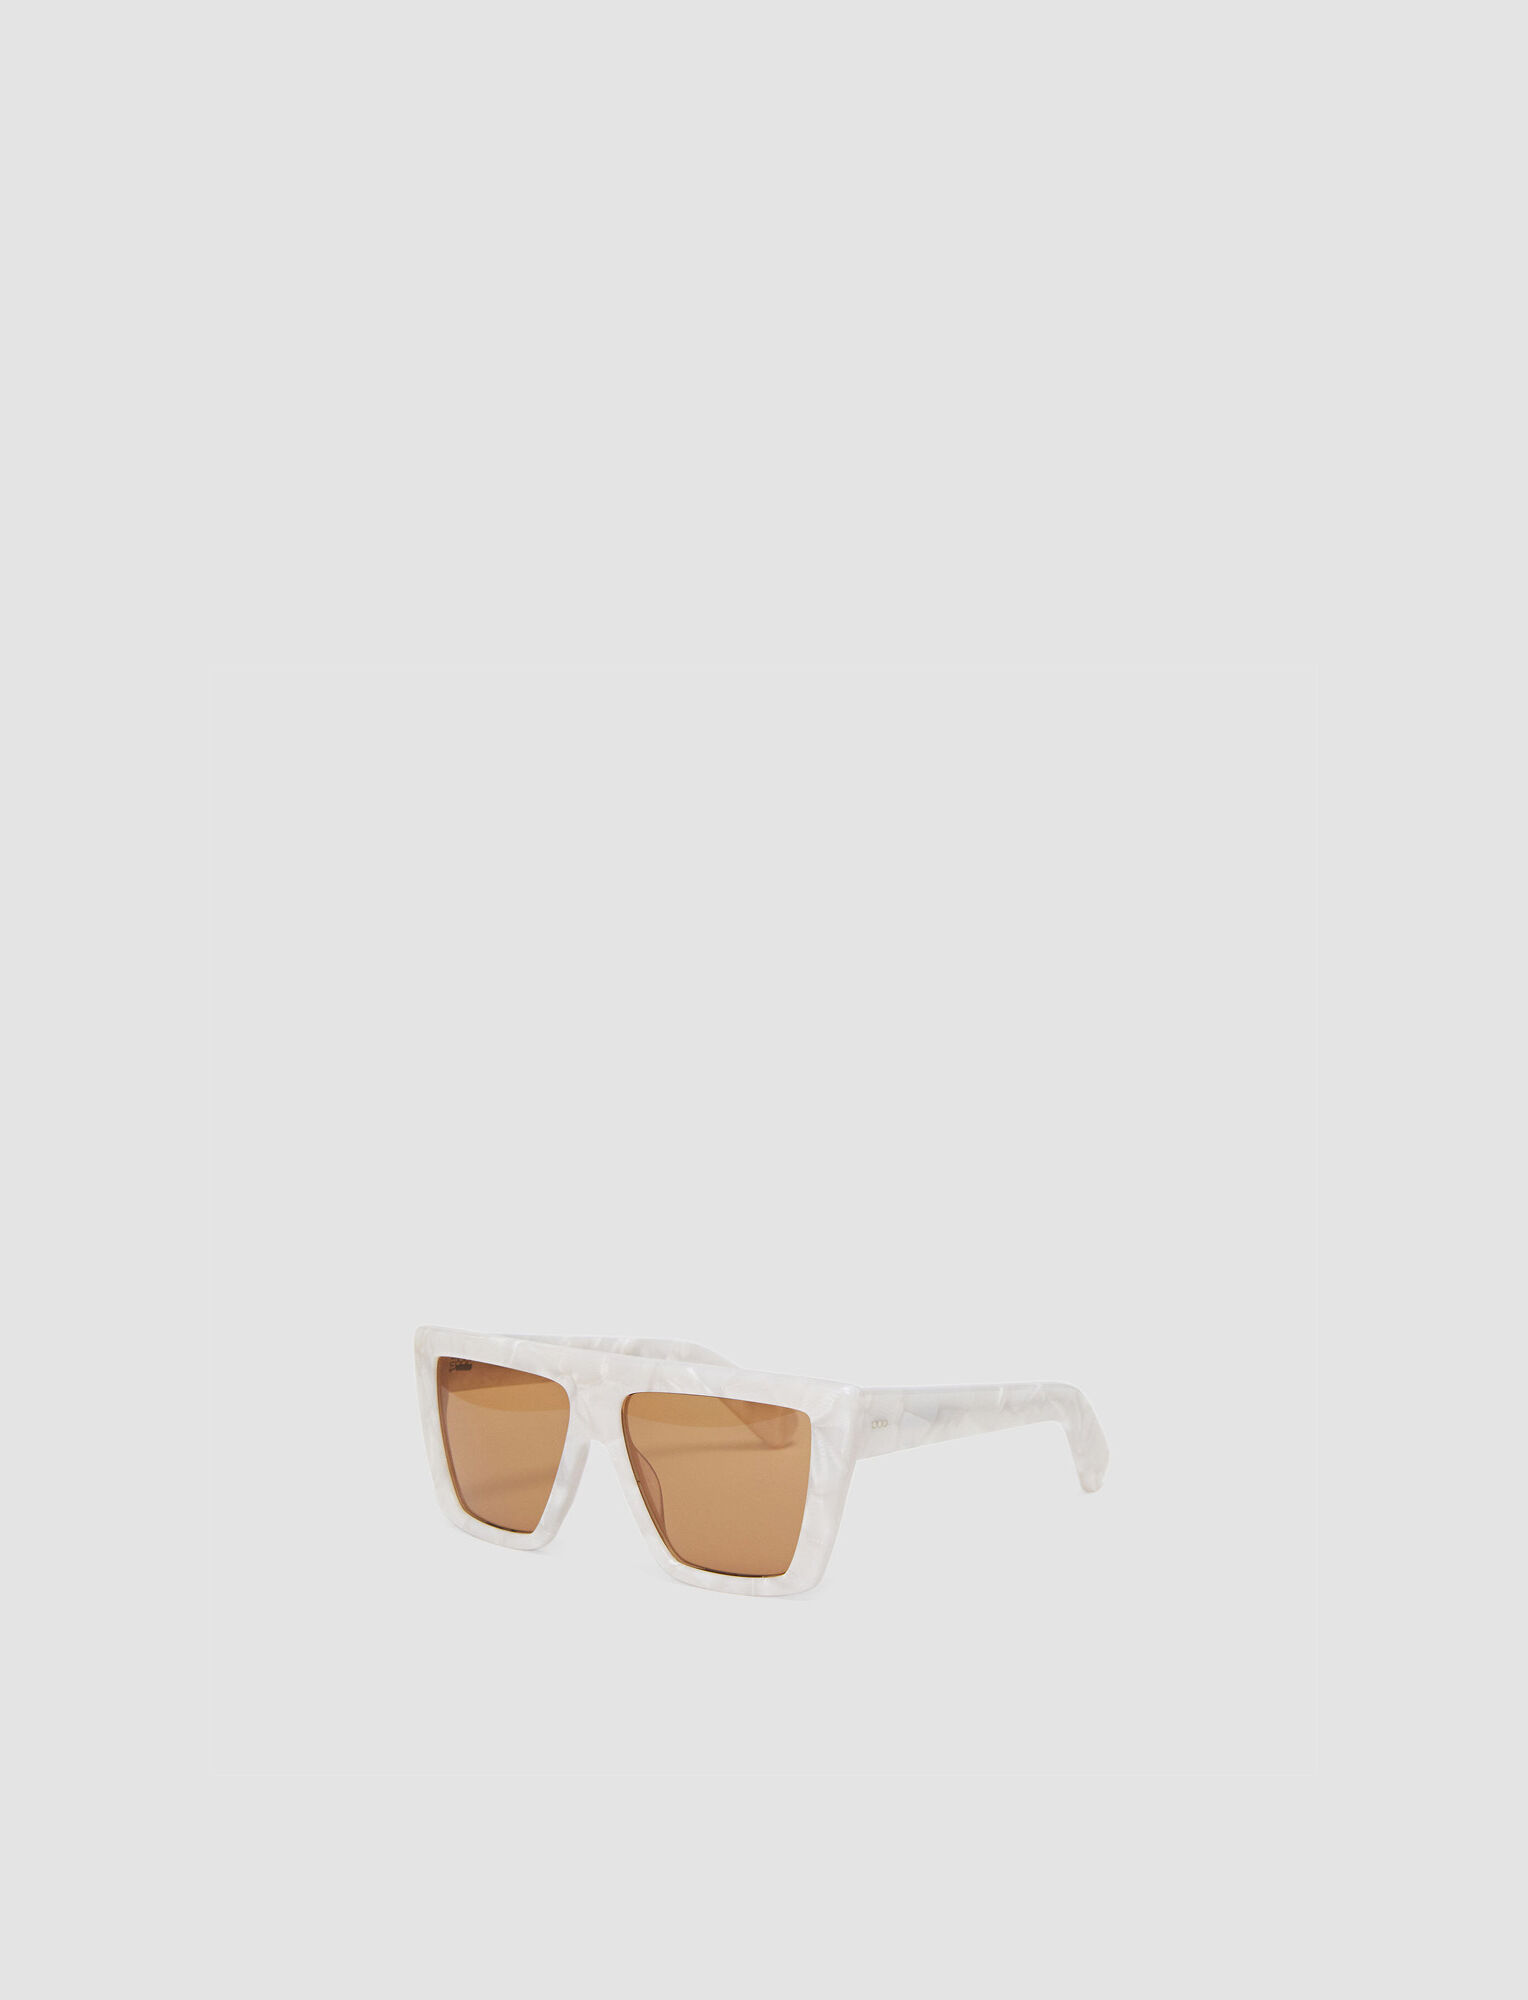 Joseph, Square Sunglasses, in Oyster White